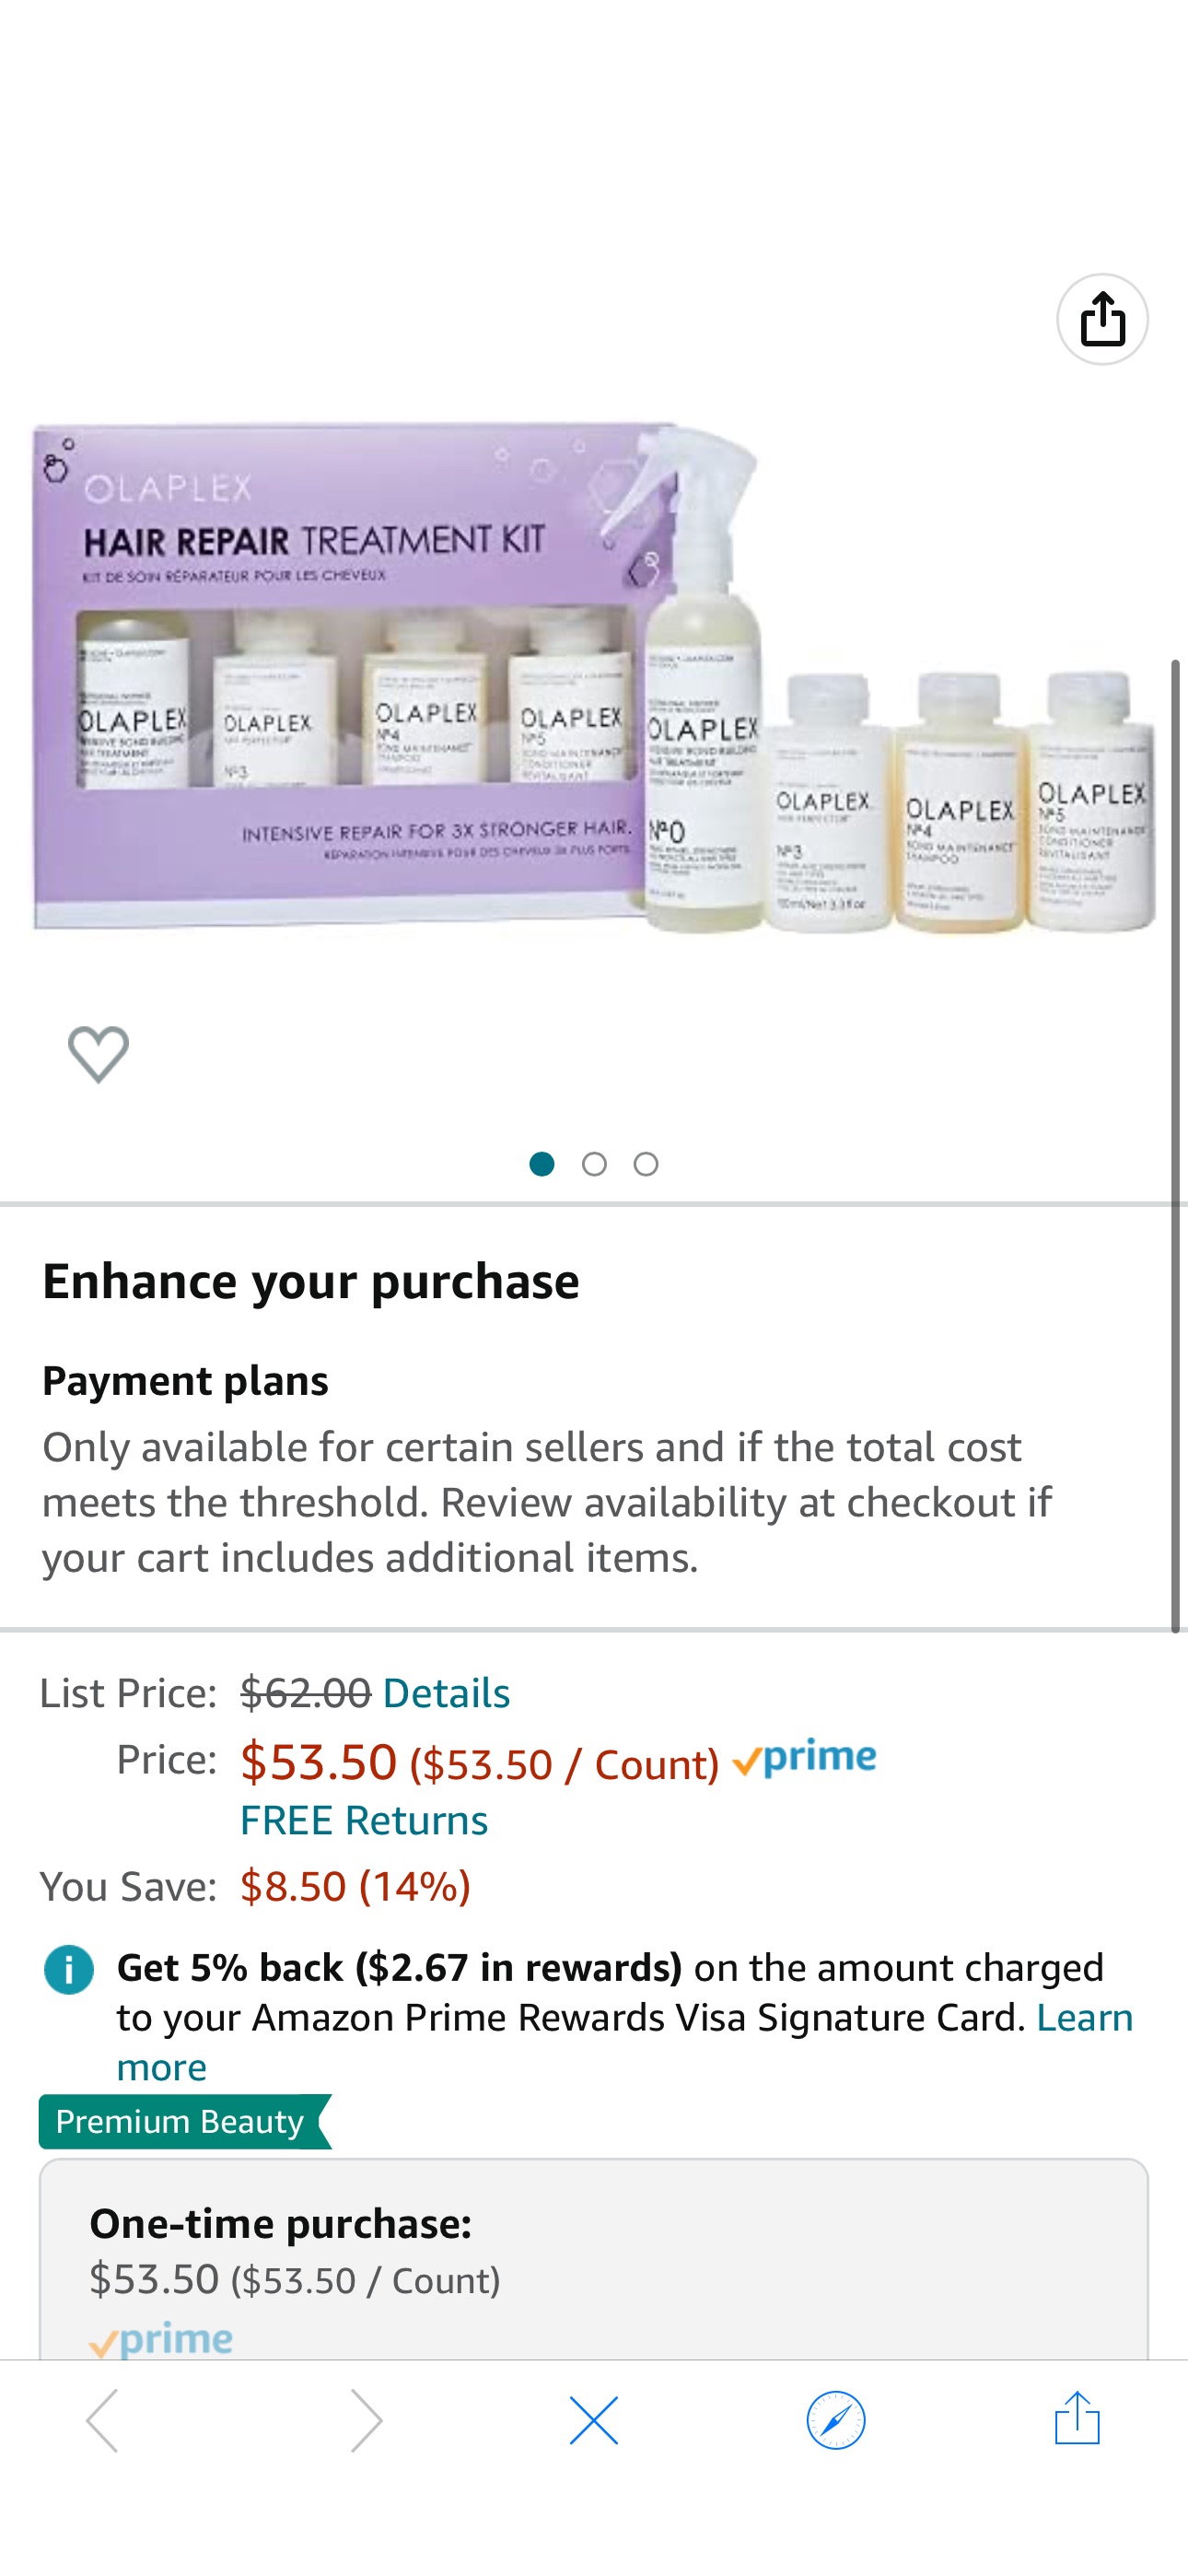 Amazon.com: Hair Repair Treatment Kit : Beauty & Personal Care